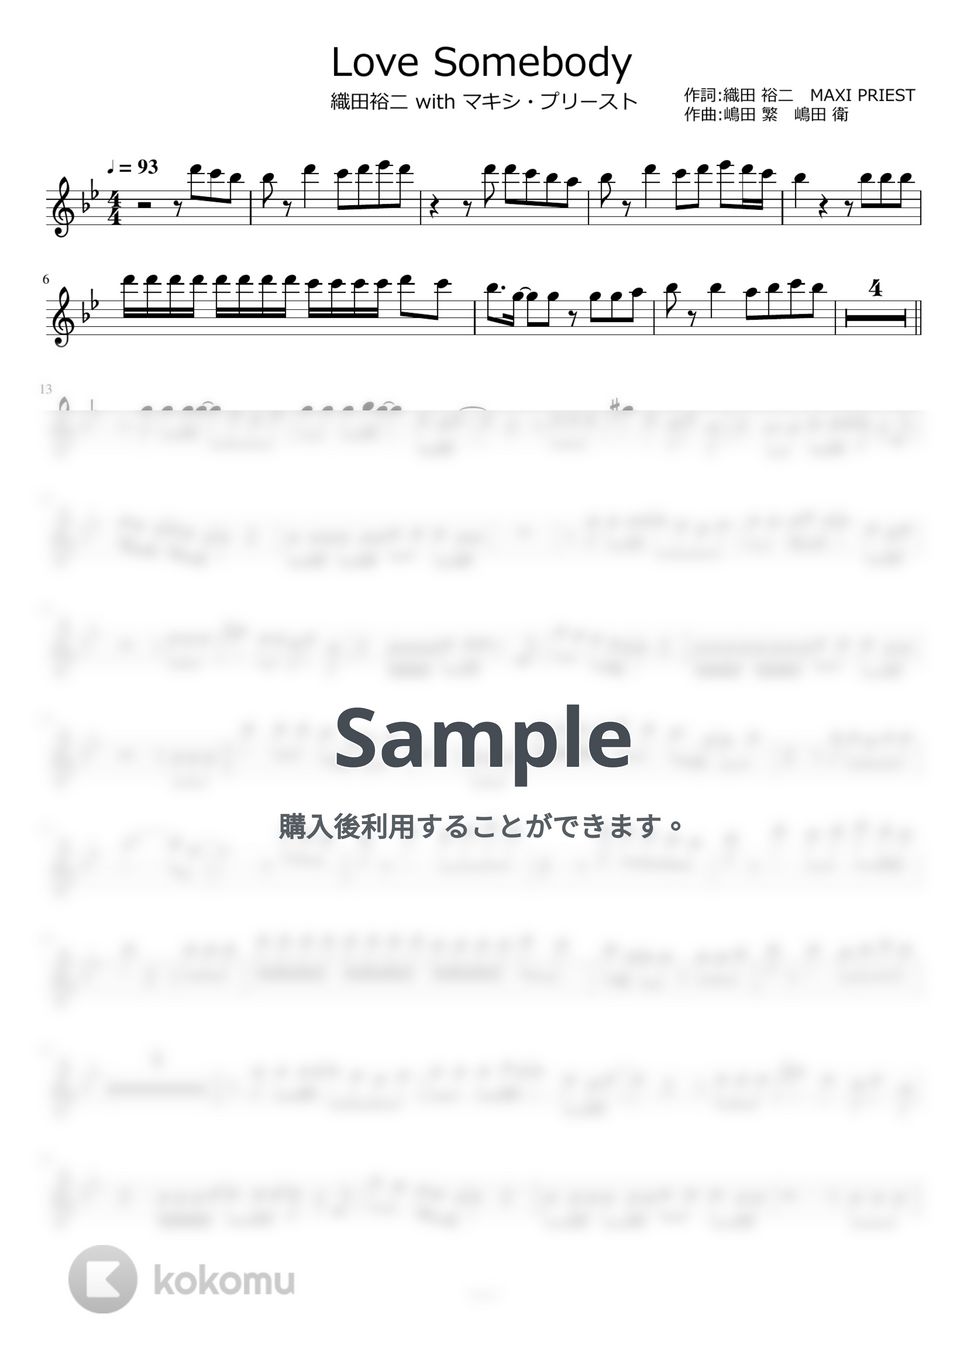 織田裕二 - Love Somebody by ayako music school